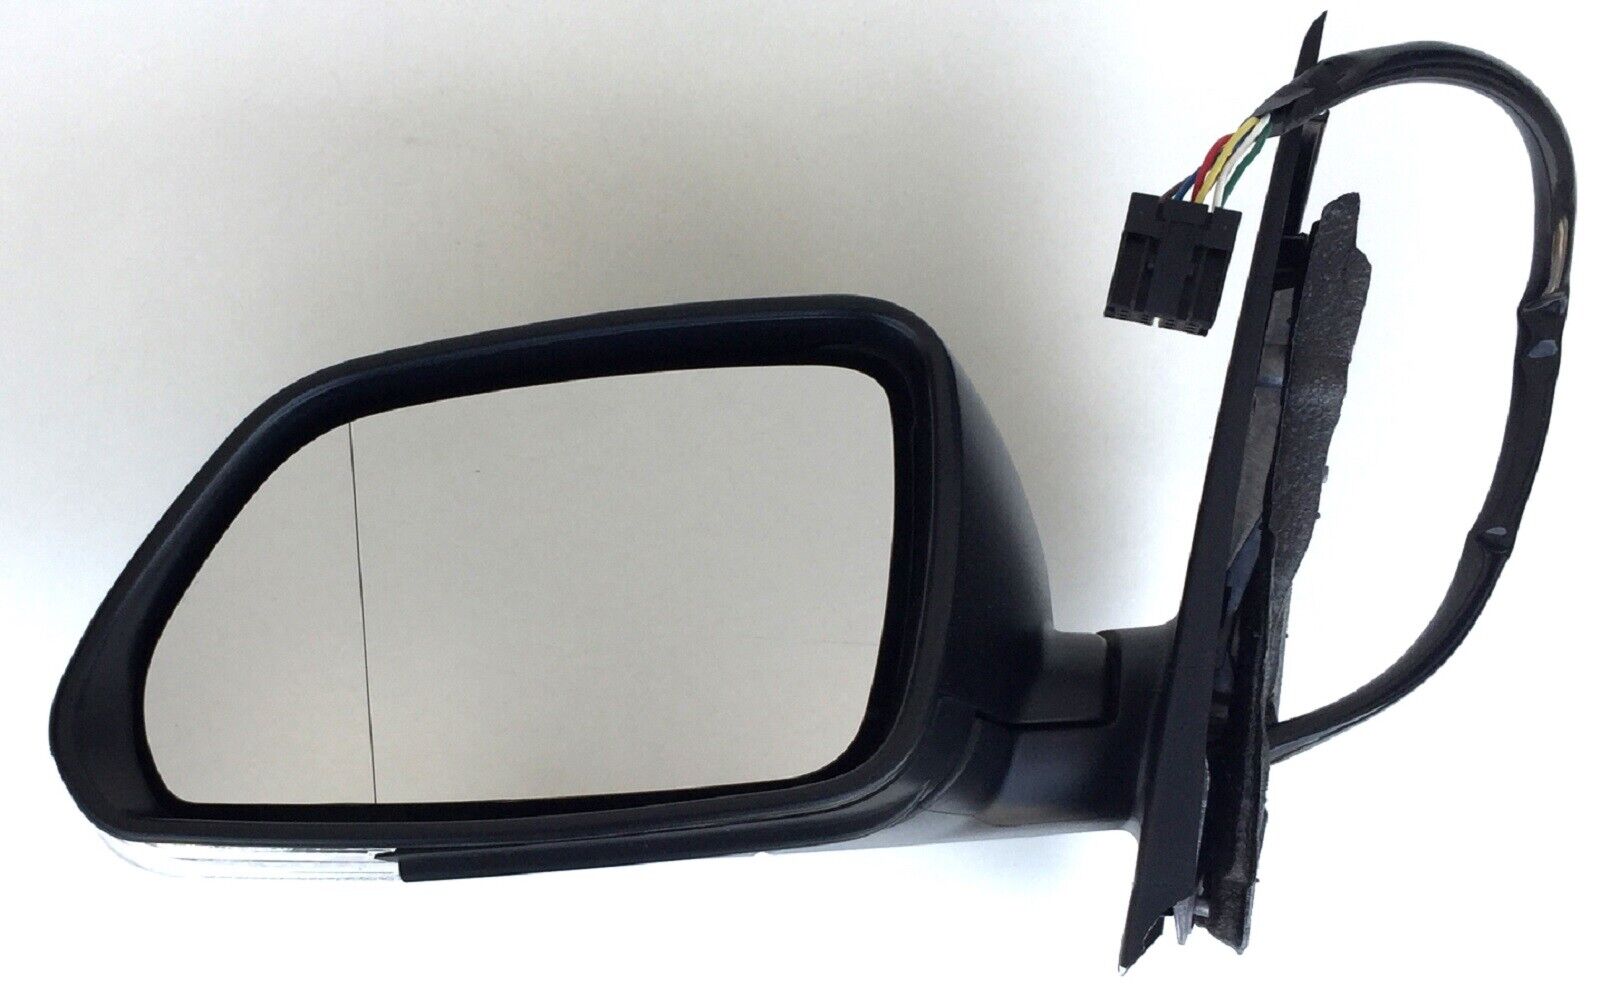 Spiegelglas Ersatzspiegel für VW POLO 9N 2005-2009 Links